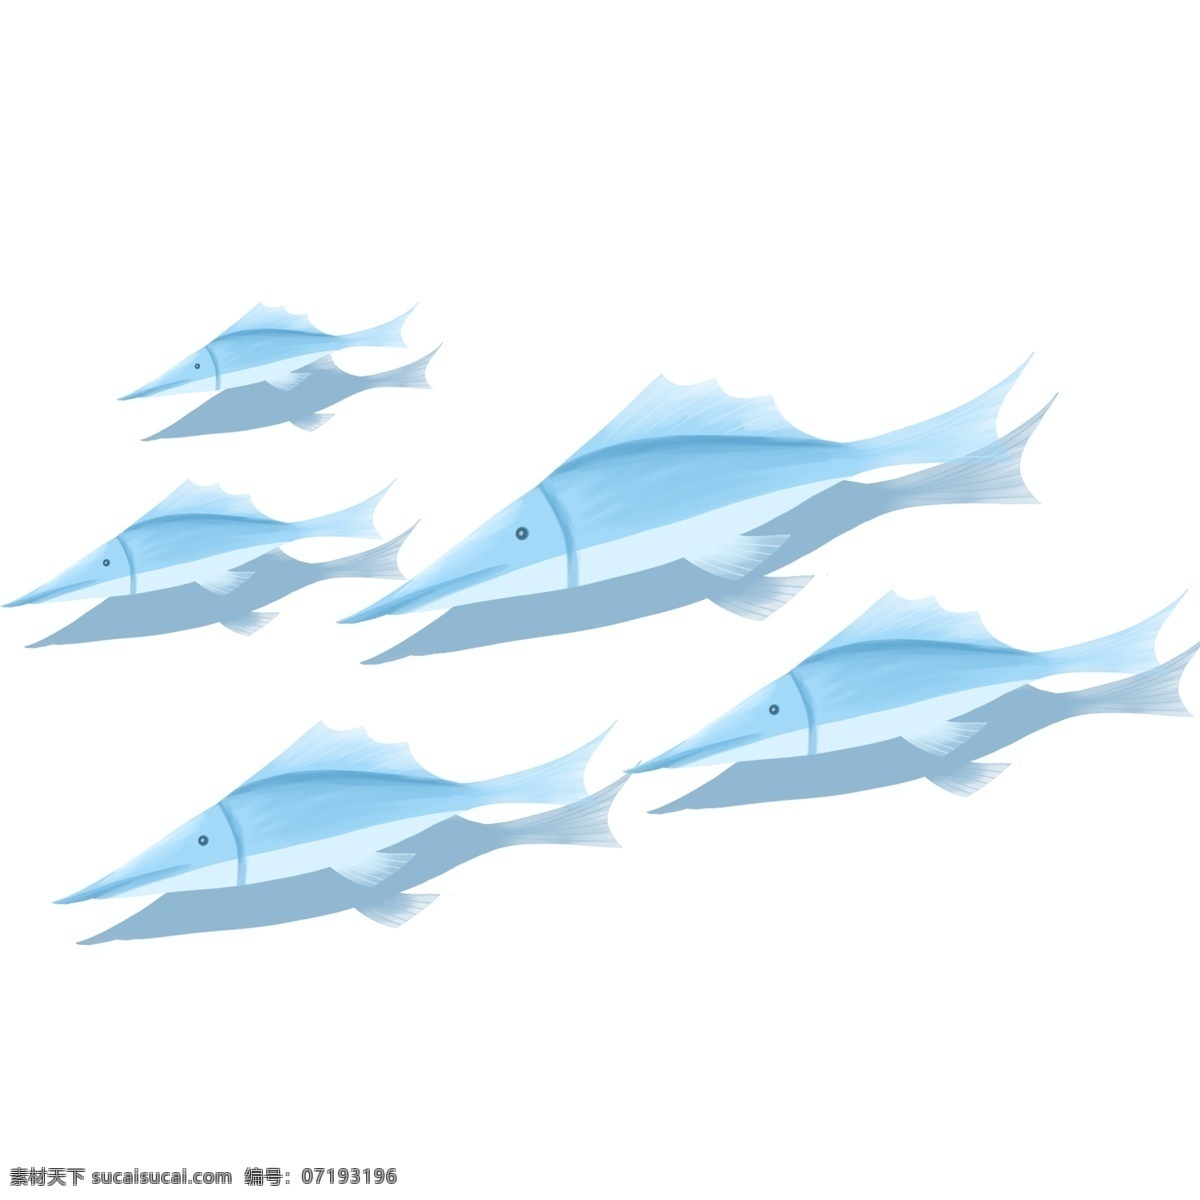 深海 动物 蓝色 鱼群 卡通 彩色 小清新 创意 手绘 绘画元素 现代 简约 装饰 图案